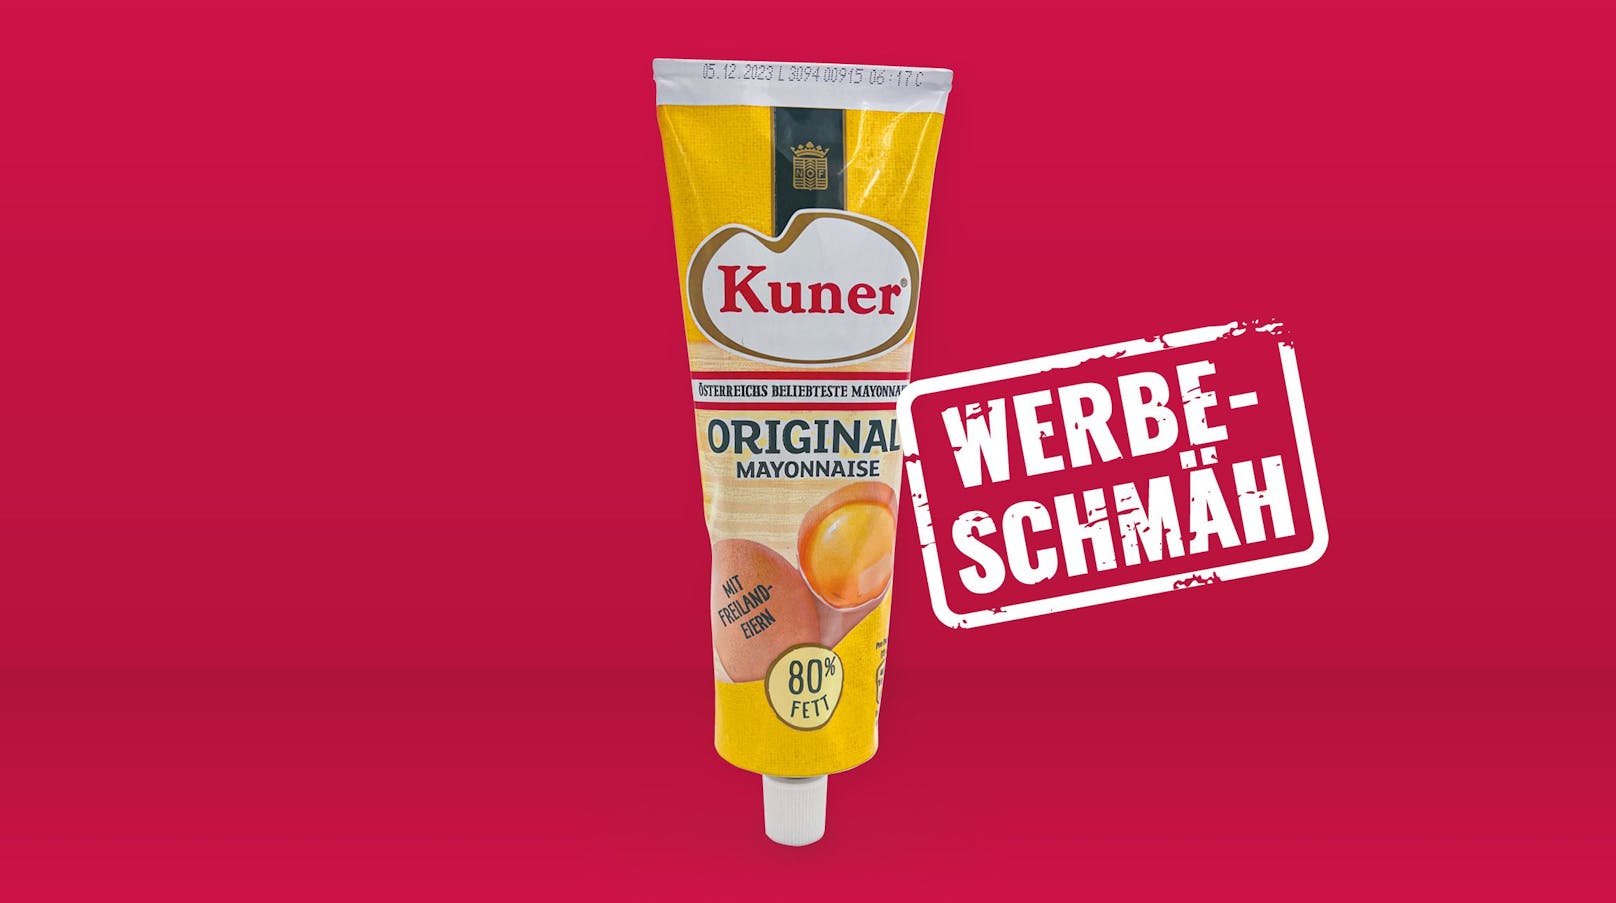 Foodwatch Österreich wählt die Kuner Orginal Mayonnaise zum Werbeschmäh des Monats Mai.